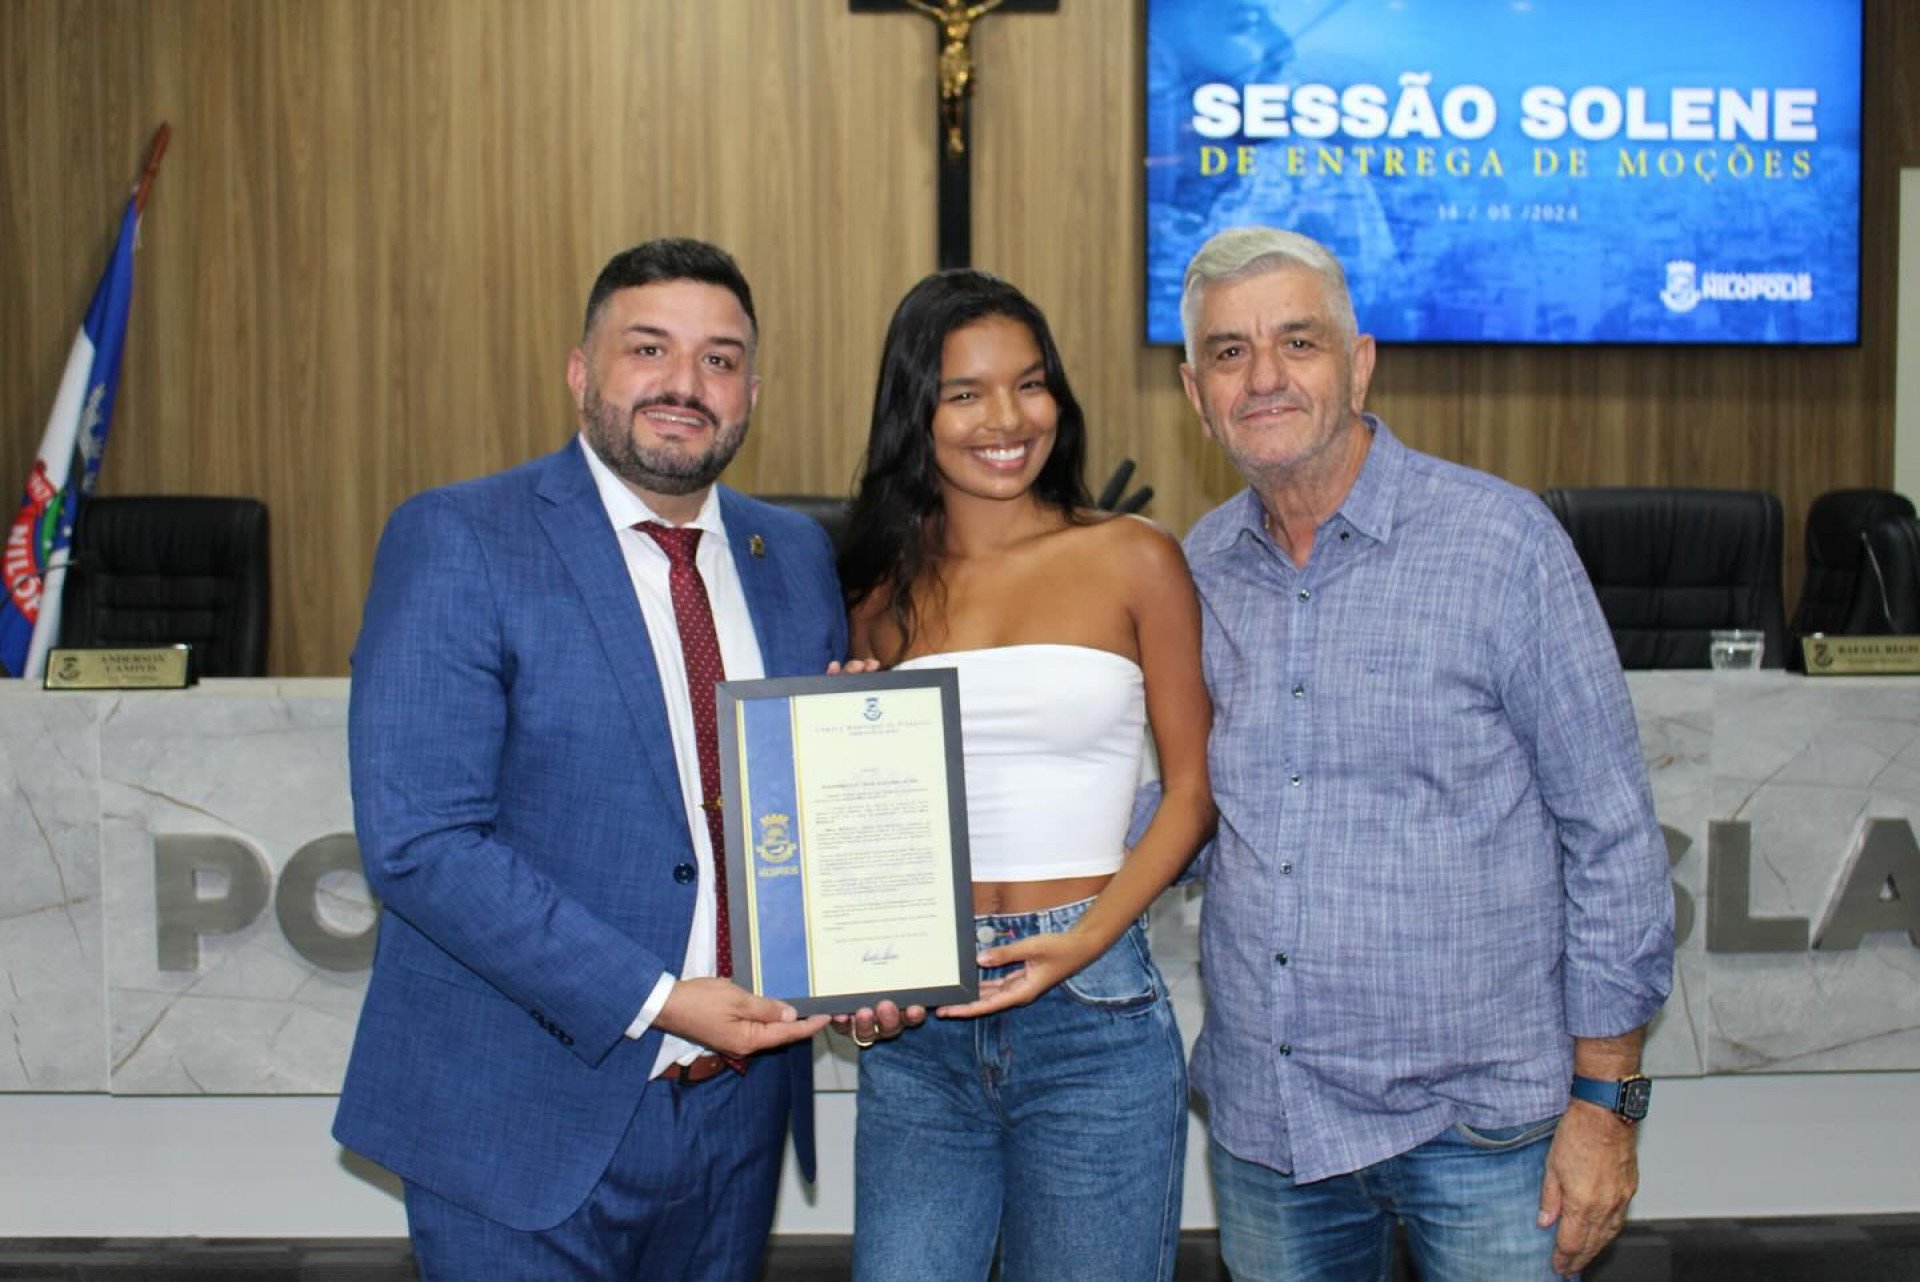 Mel Muzzillo recebeu uma moção de congratulação do vereador Leandro Hungria (terno) - Divulgação / CMN